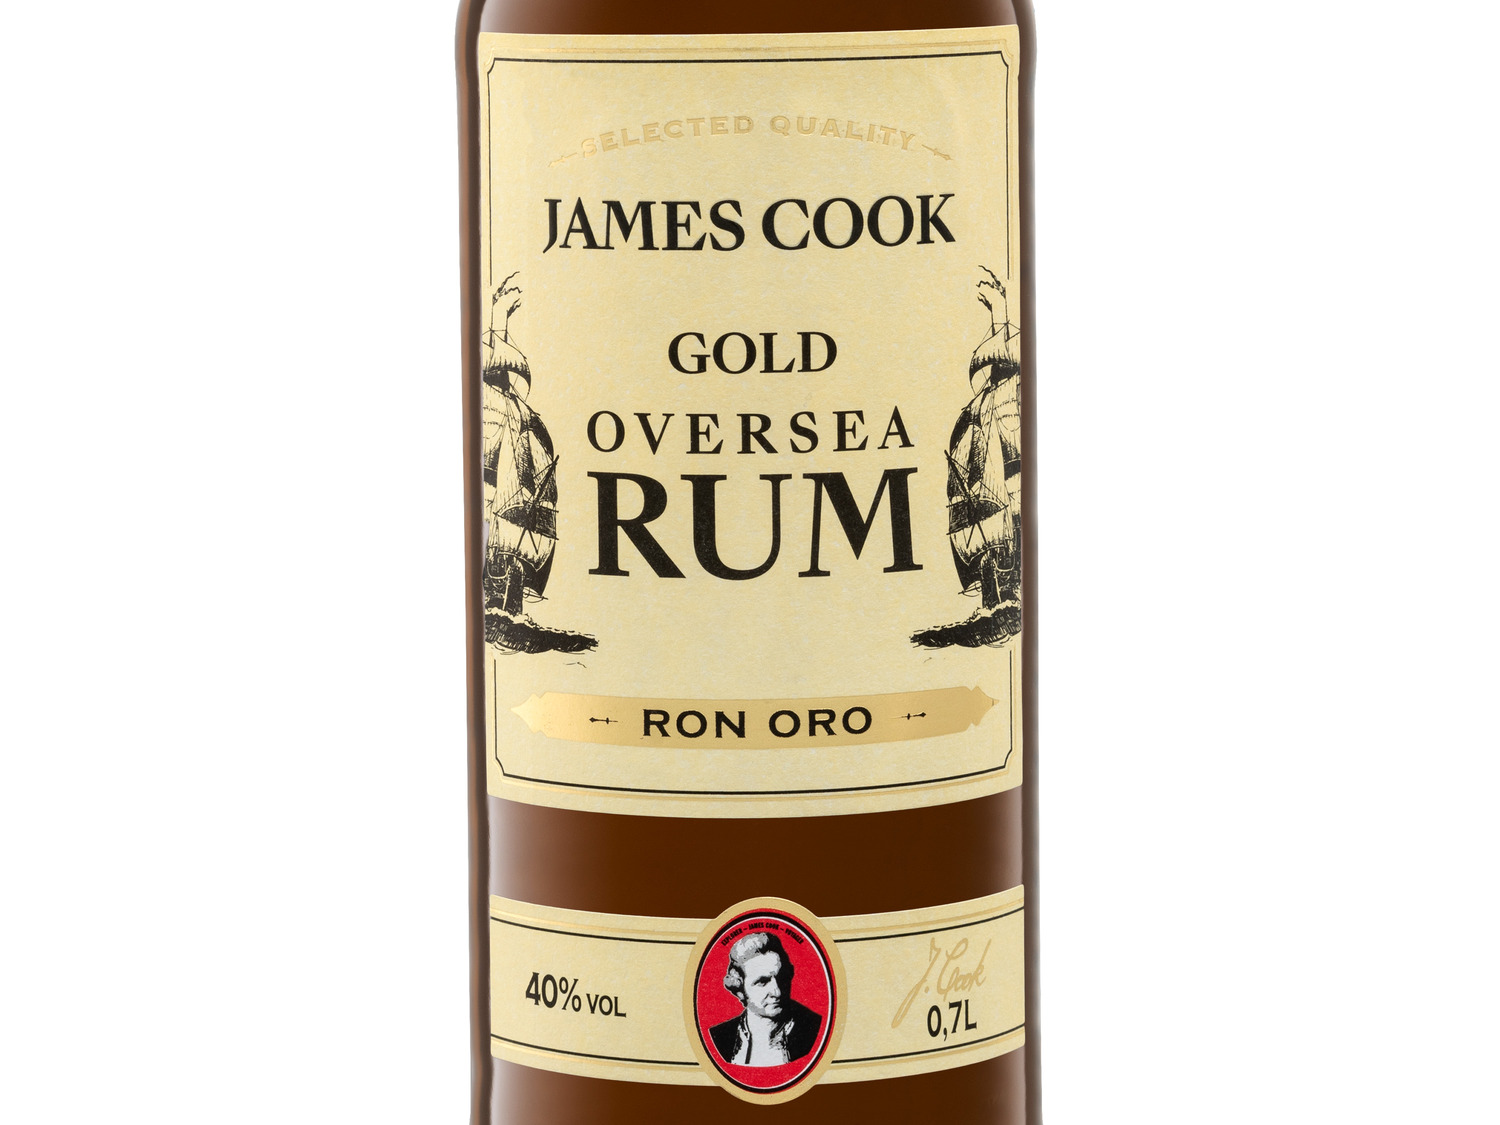 JAMES COOK Übersee Rum 40% Vol online kaufen | LIDL